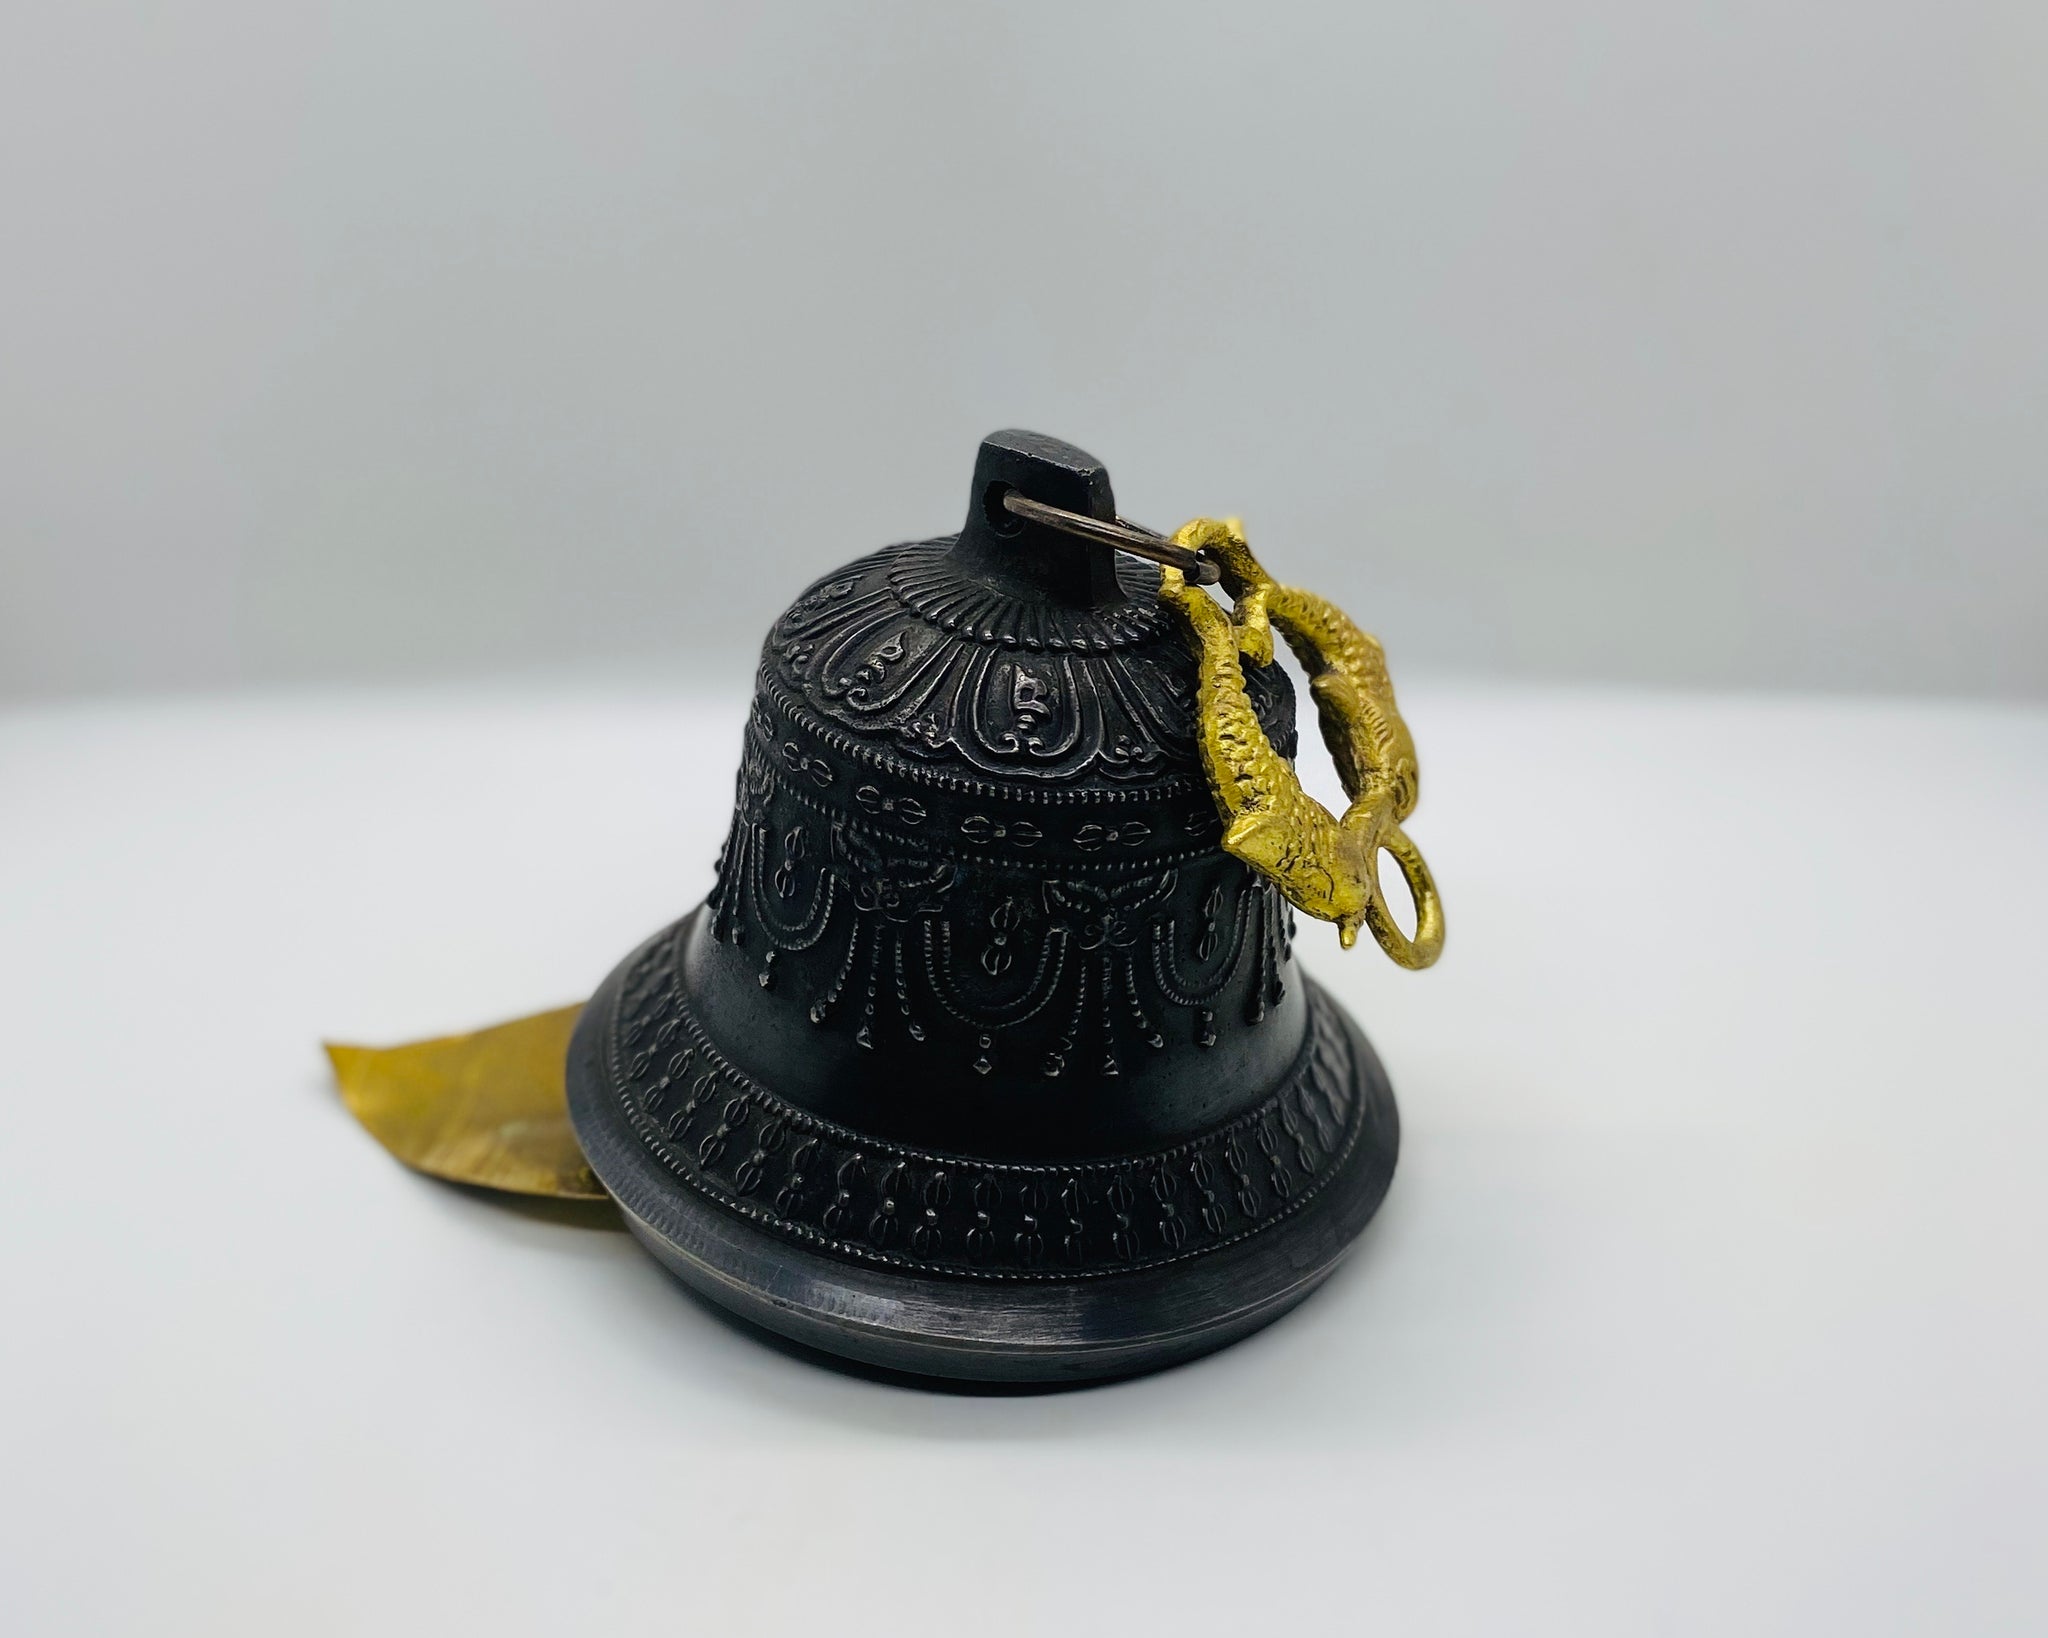 Antique Hanging Bell (Dark) - Yogi Singing Bowl